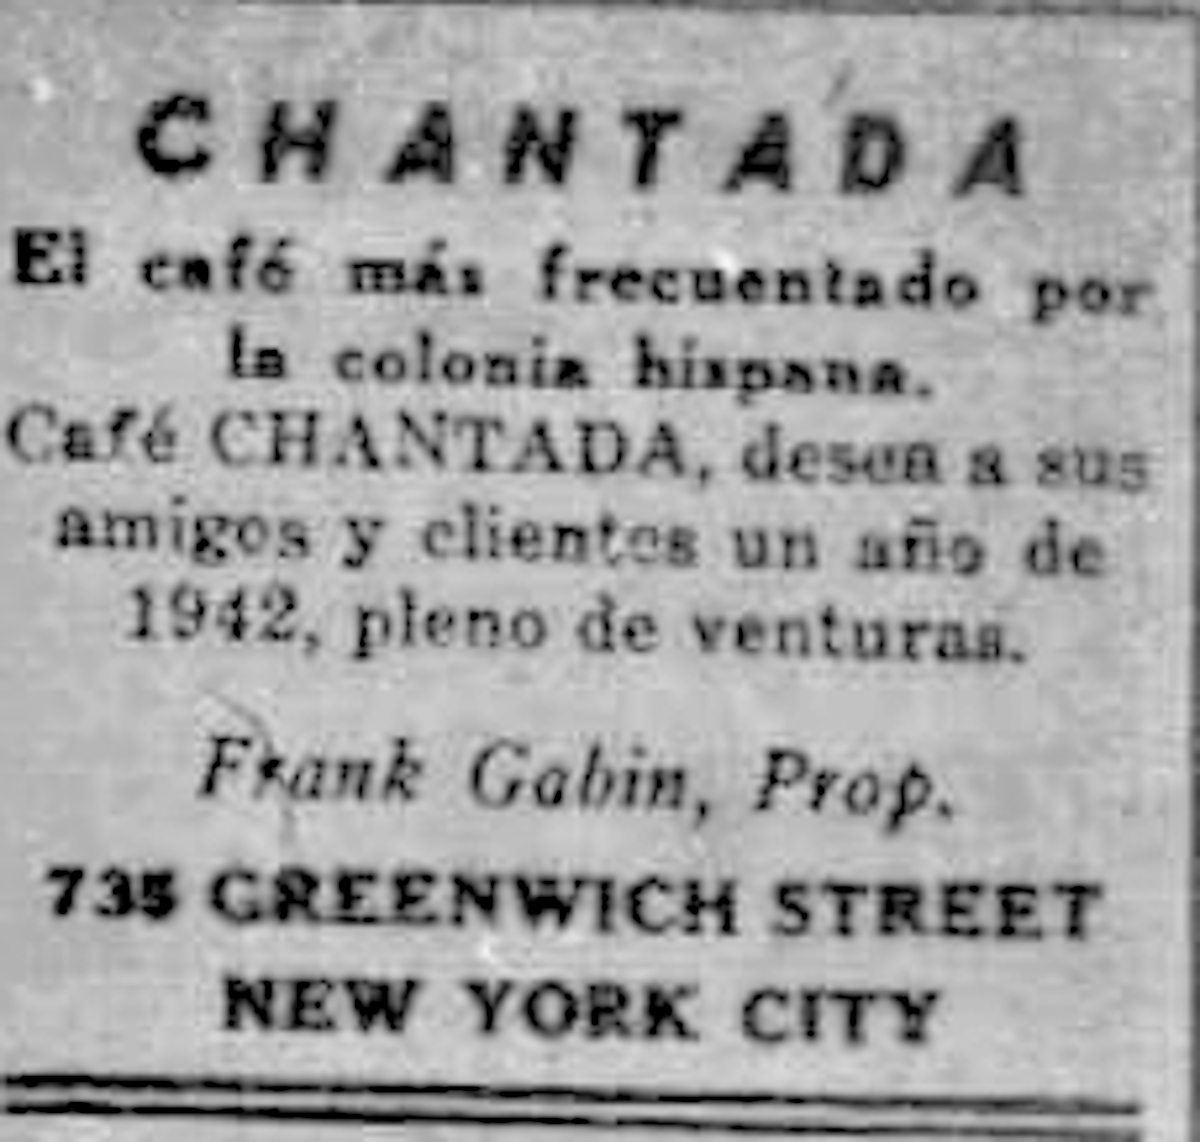 Café Chantada > 735 Greenwich St, New York │ 1940s (España Libre, Arquivo da Emigración Galega)